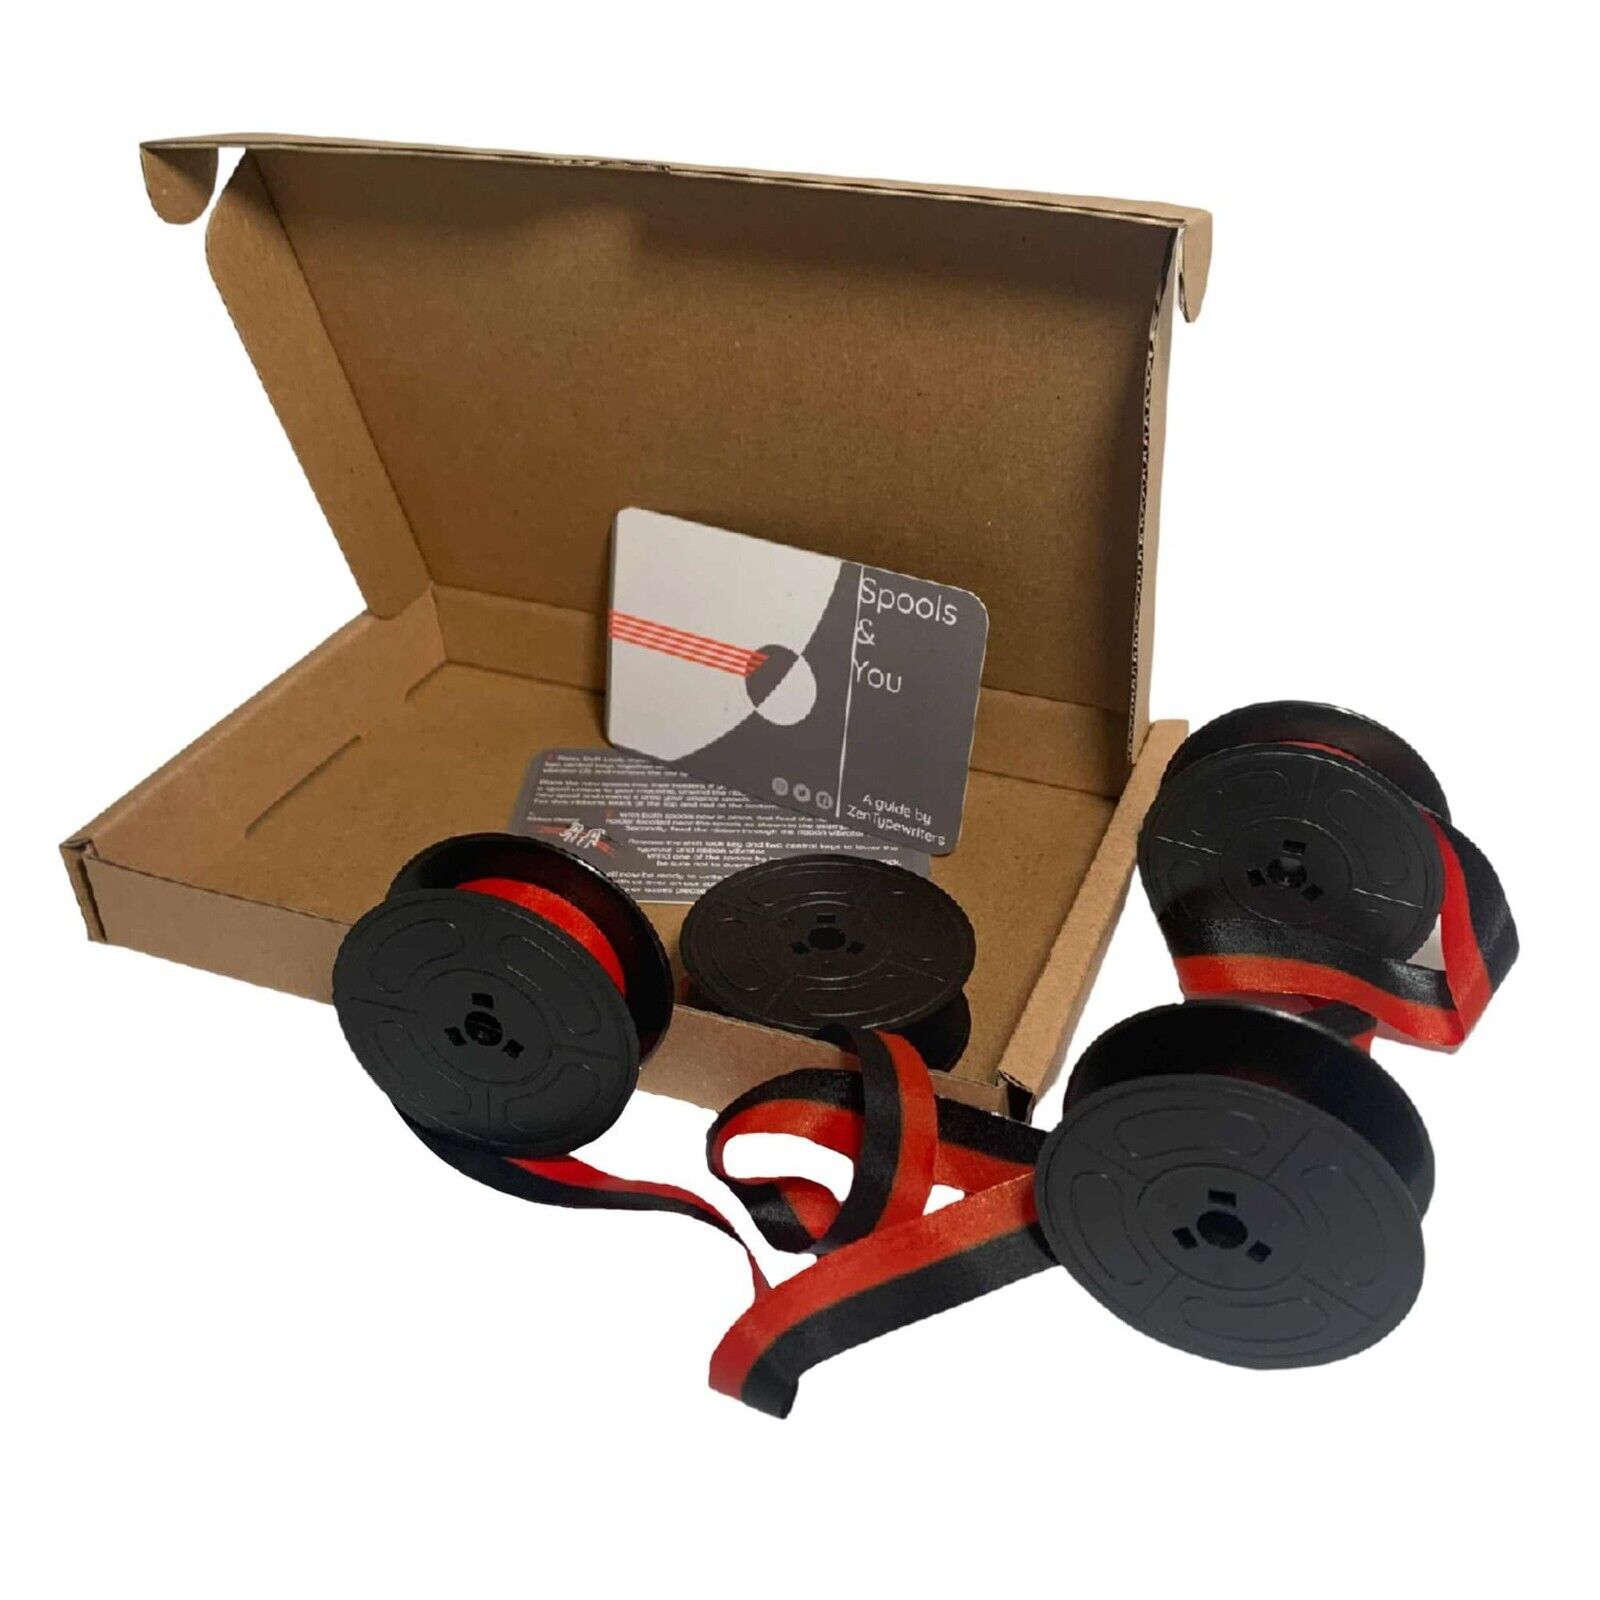 2x Olivetti Lettera 32 Typewriter Ribbon Red/Black -Gift Box - ZenTypewriters